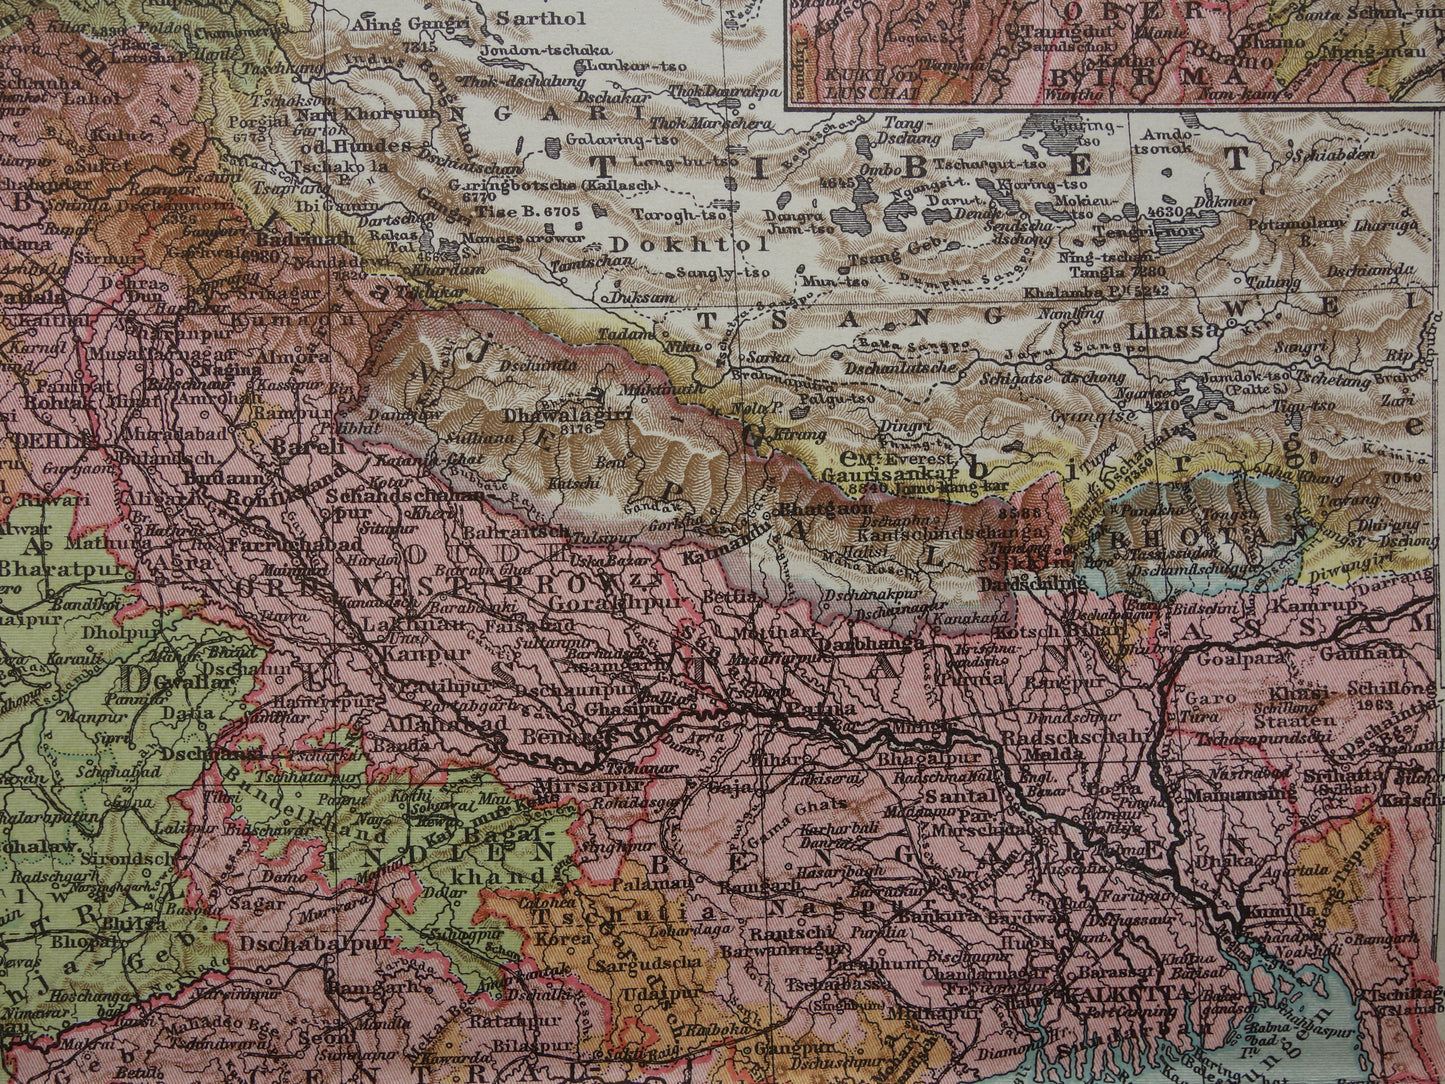 INDIA oude gedetailleerde kaart van India uit 1905 originele vintage landkaart